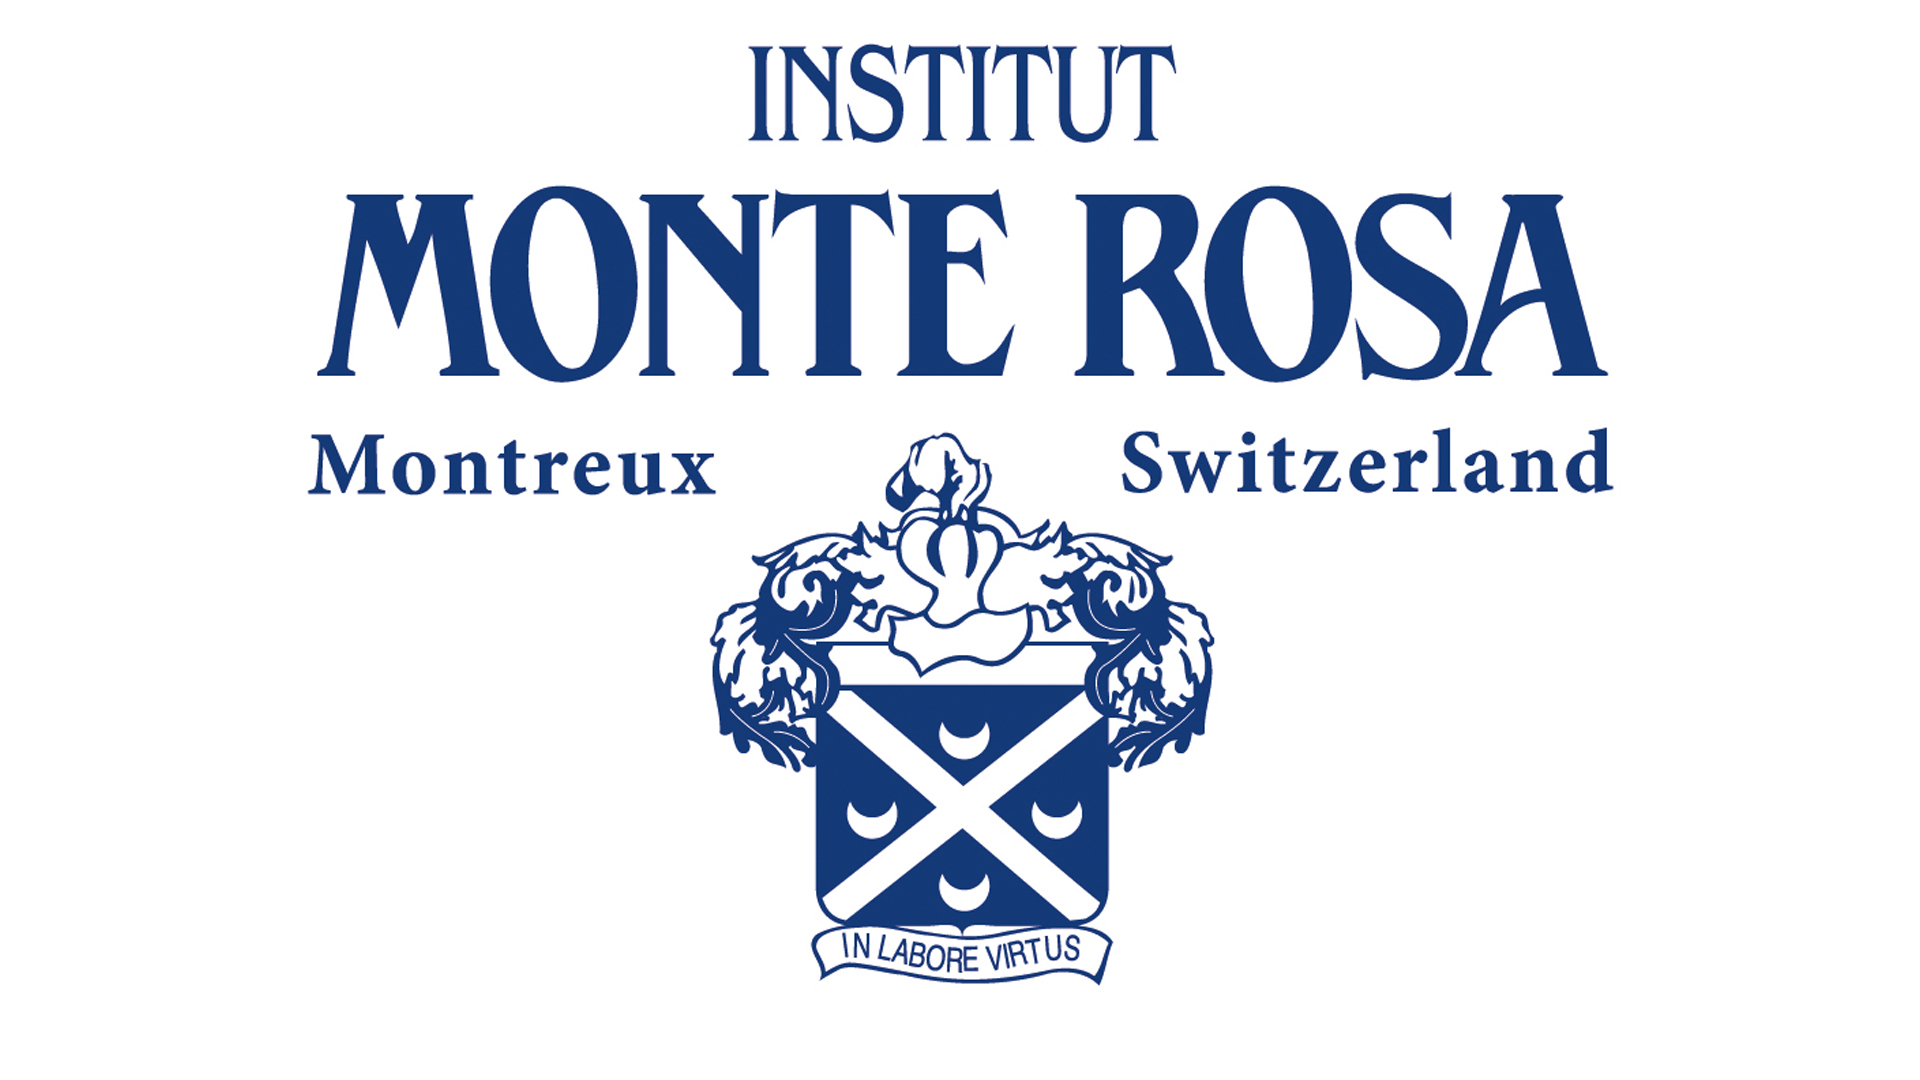 冬季营地在Institut Monte Rosa - slide